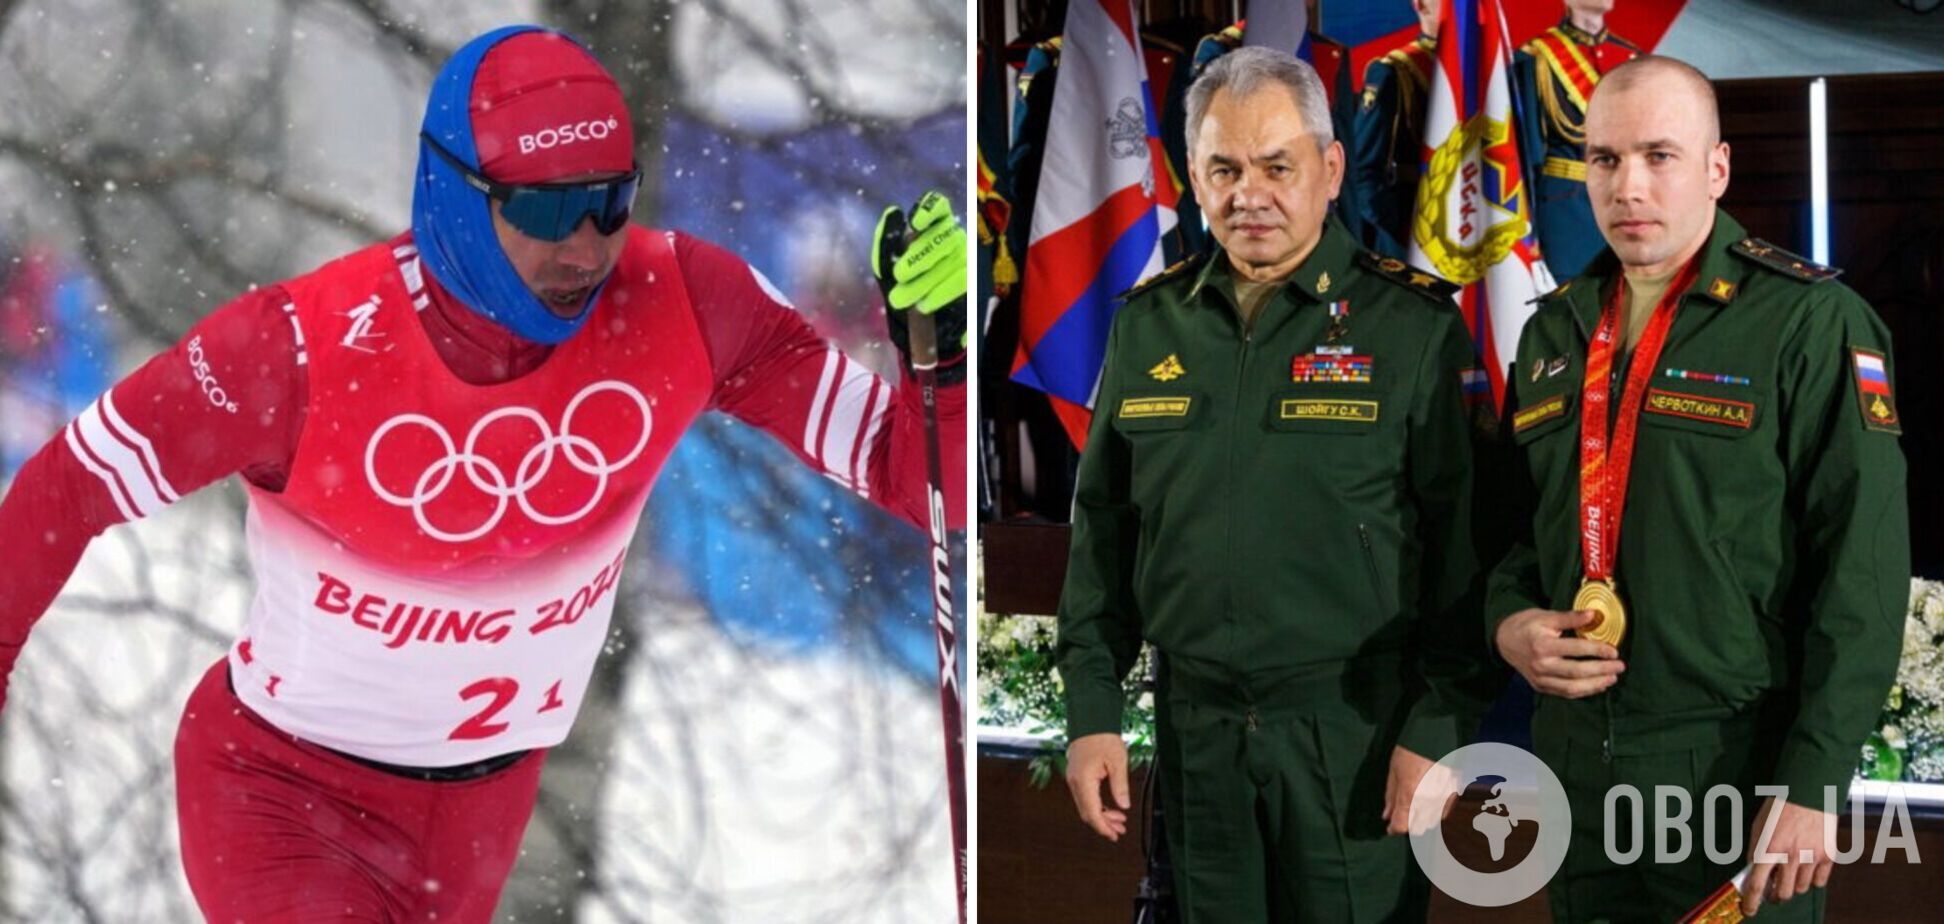 'Гасять' саме нас': чемпіон Олімпіади з РФ поскаржився на вимоги МОК, забувши про війну в Україні